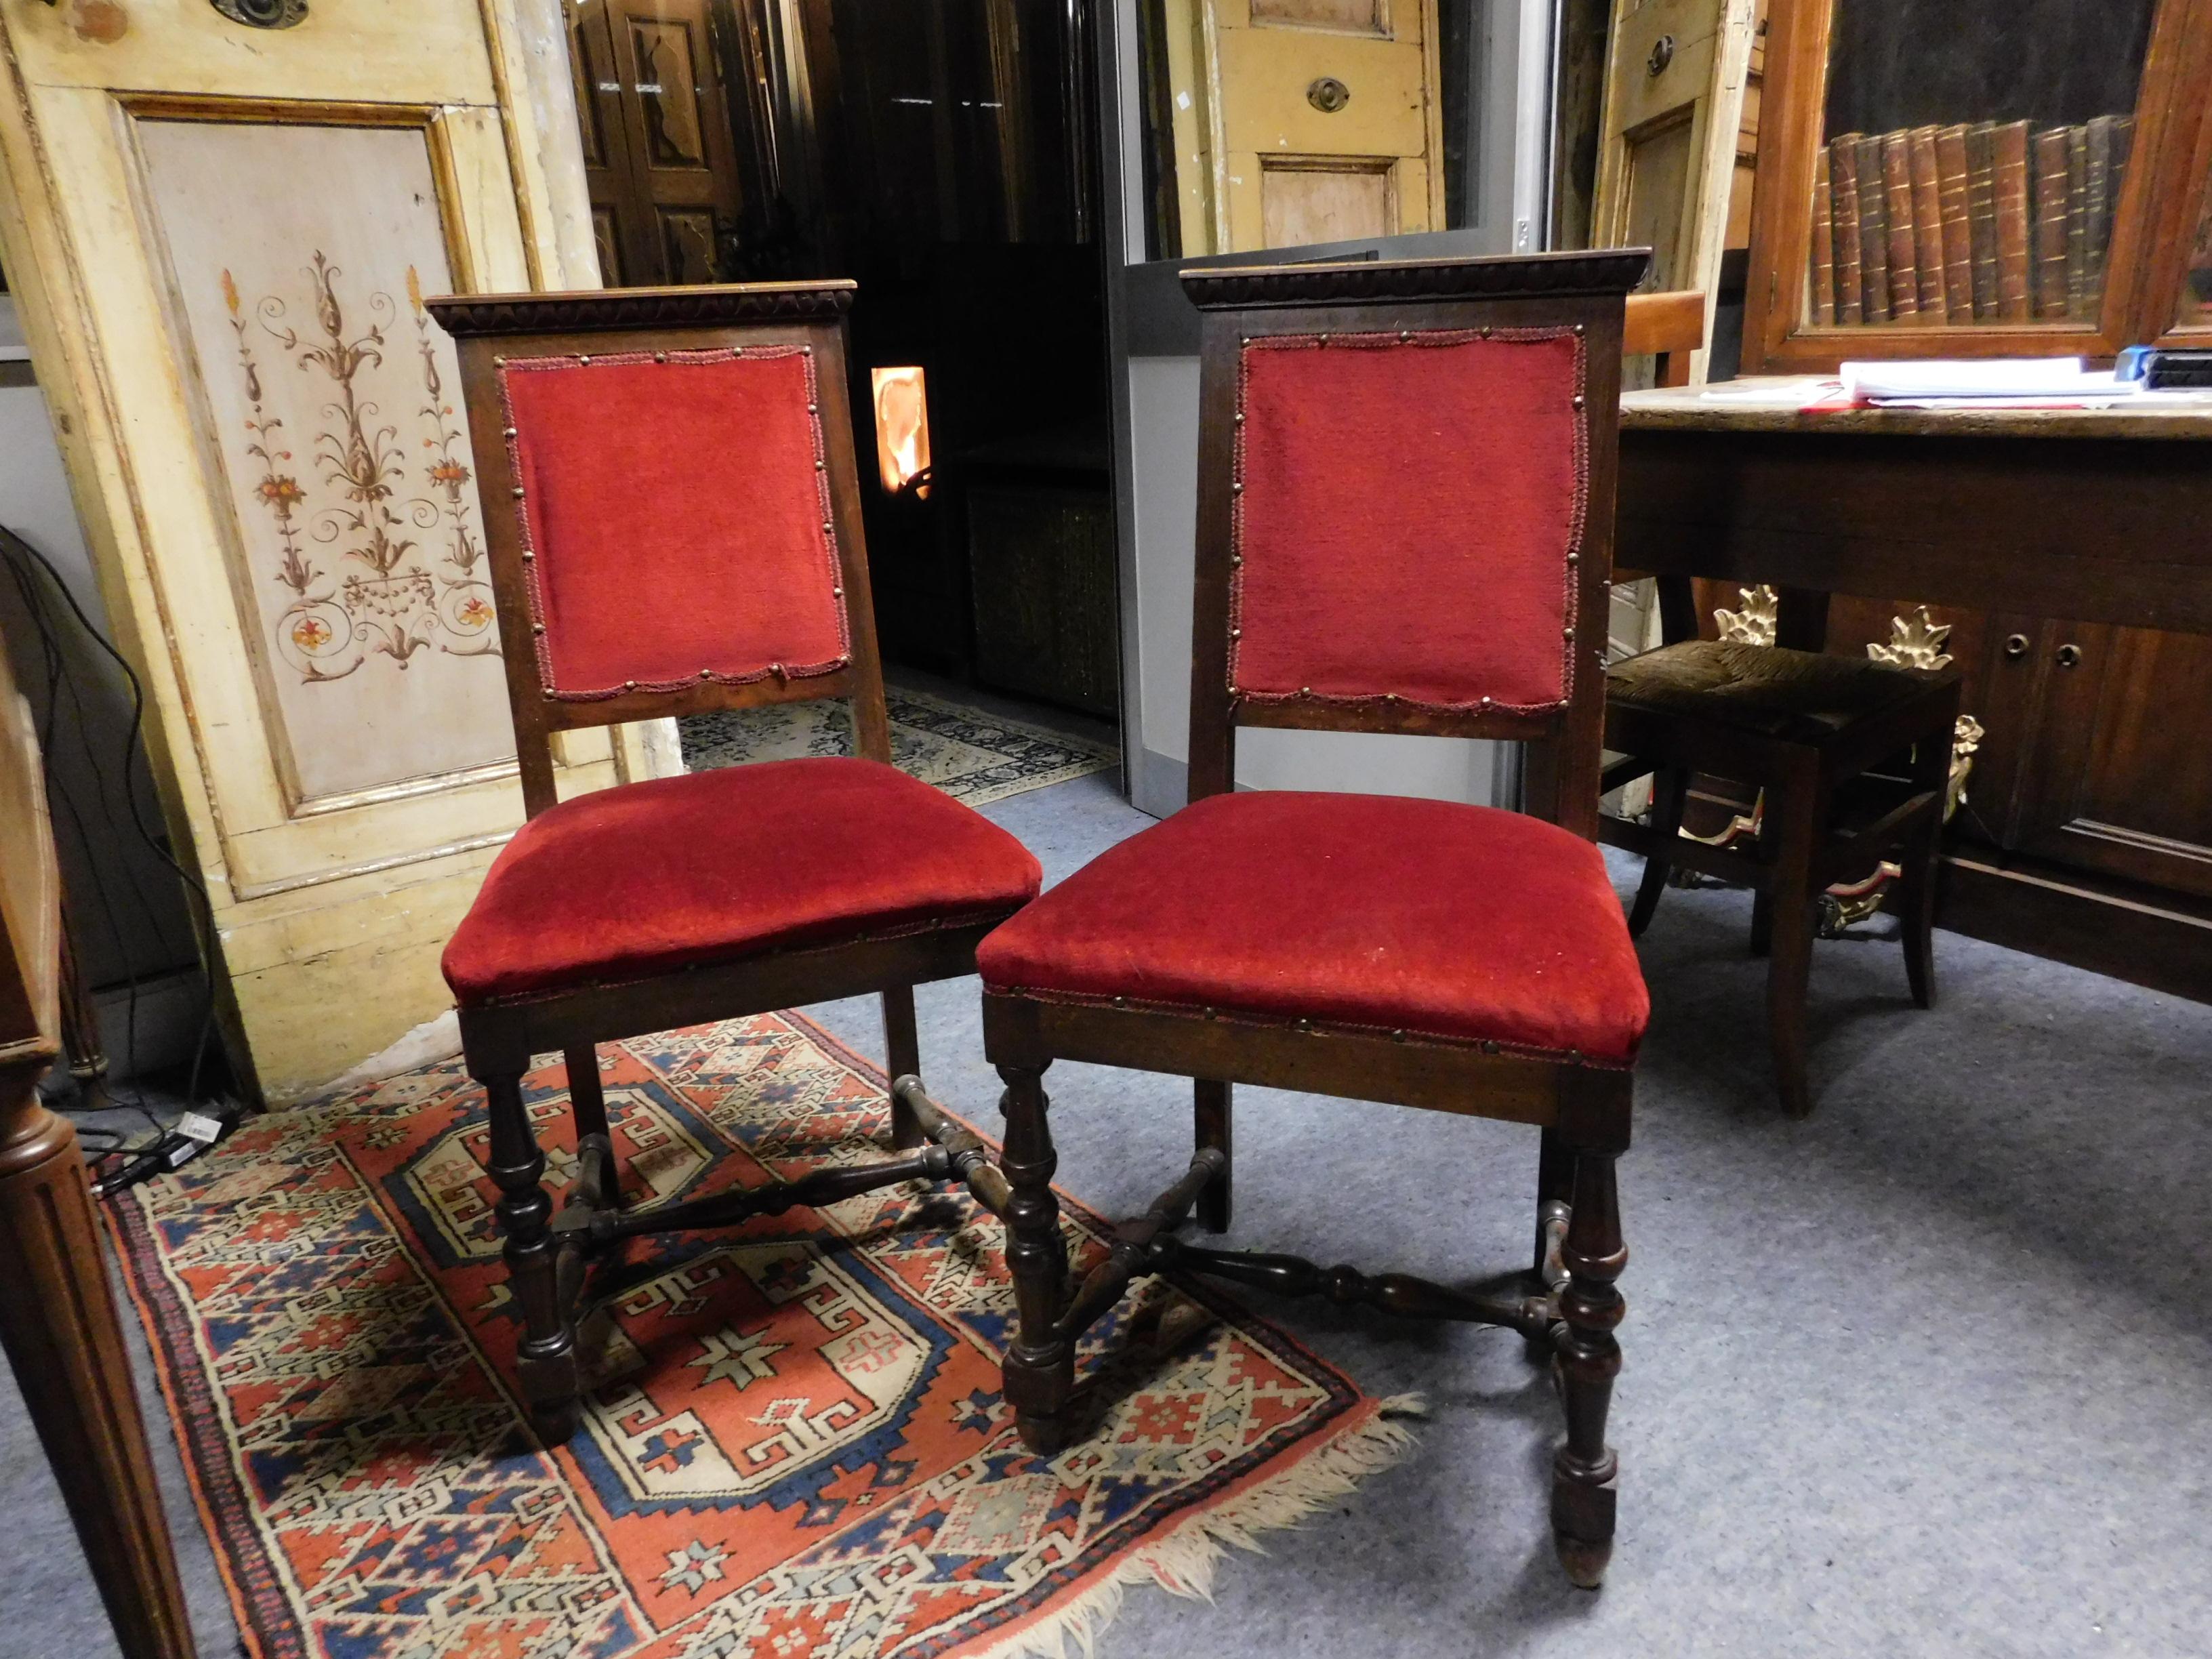 Paire de chaises anciennes, également utilisées comme fauteuils, doublées de velours rouge, structure en bois avec cadres sculptés, tissu neuf et parfait, beau et très confortable, siège enveloppant pour embellir un salon ou une table ornée.